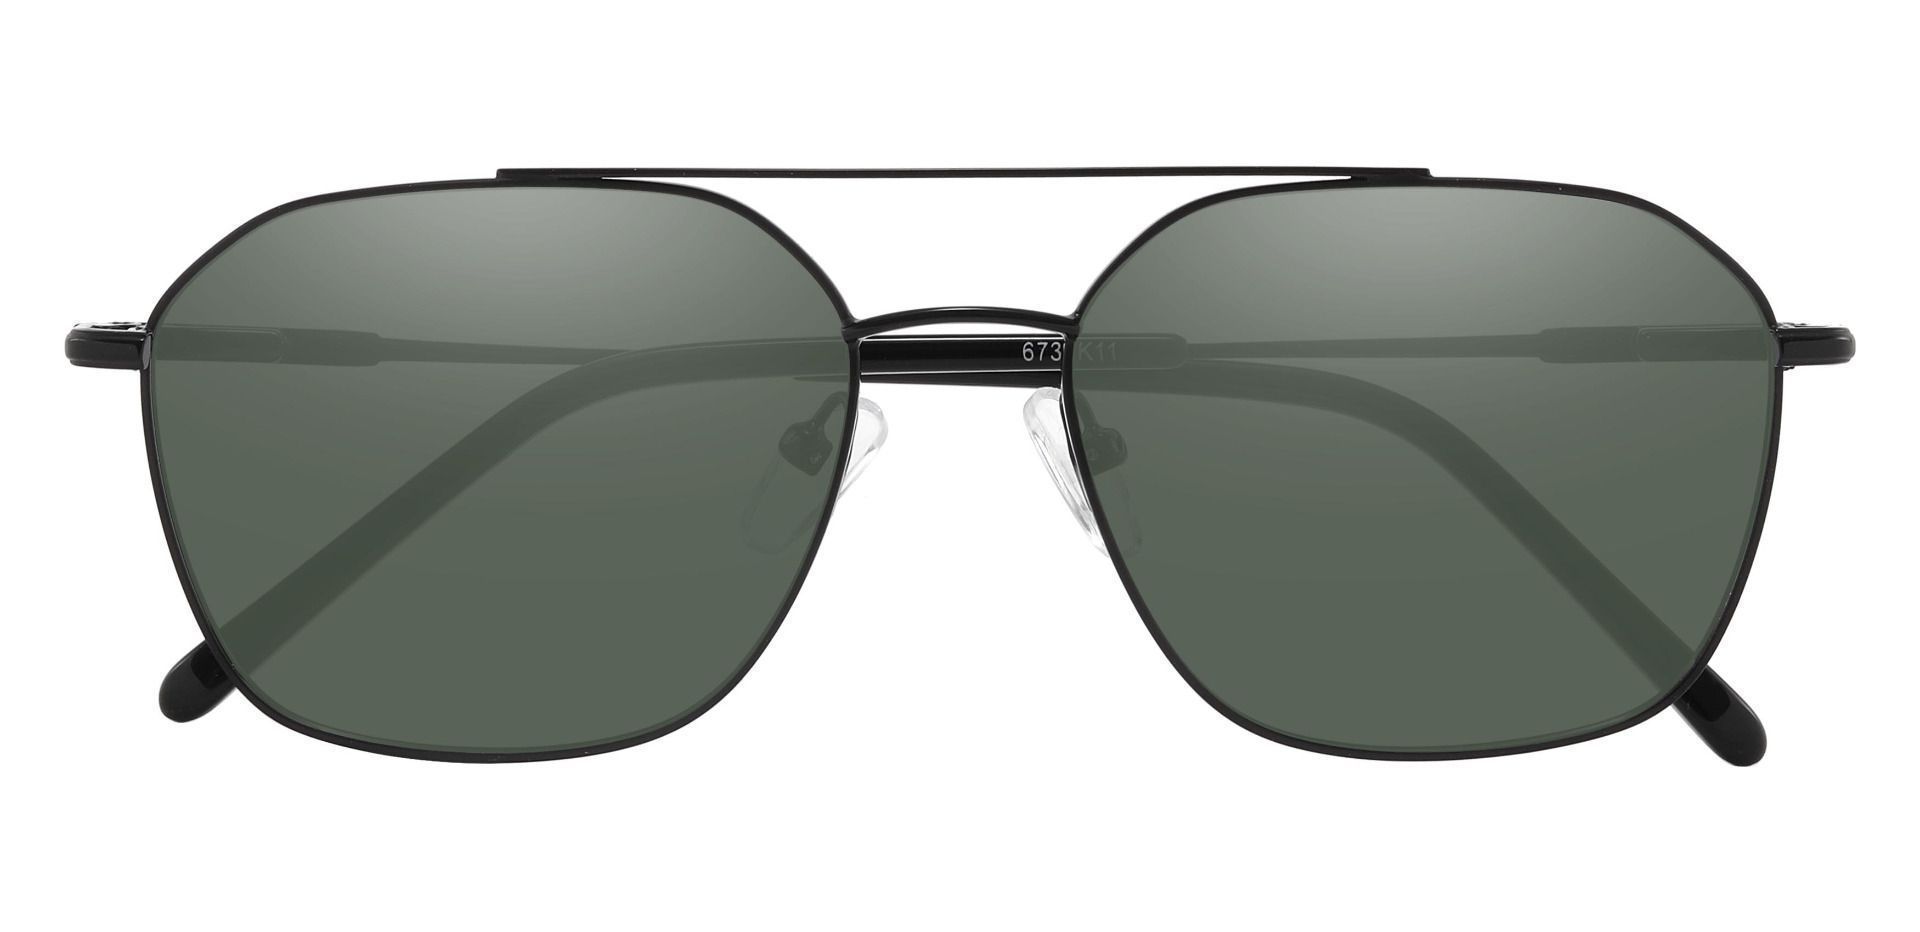 Harvey Aviator Reading Sunglasses - Black Frame With Green Lenses